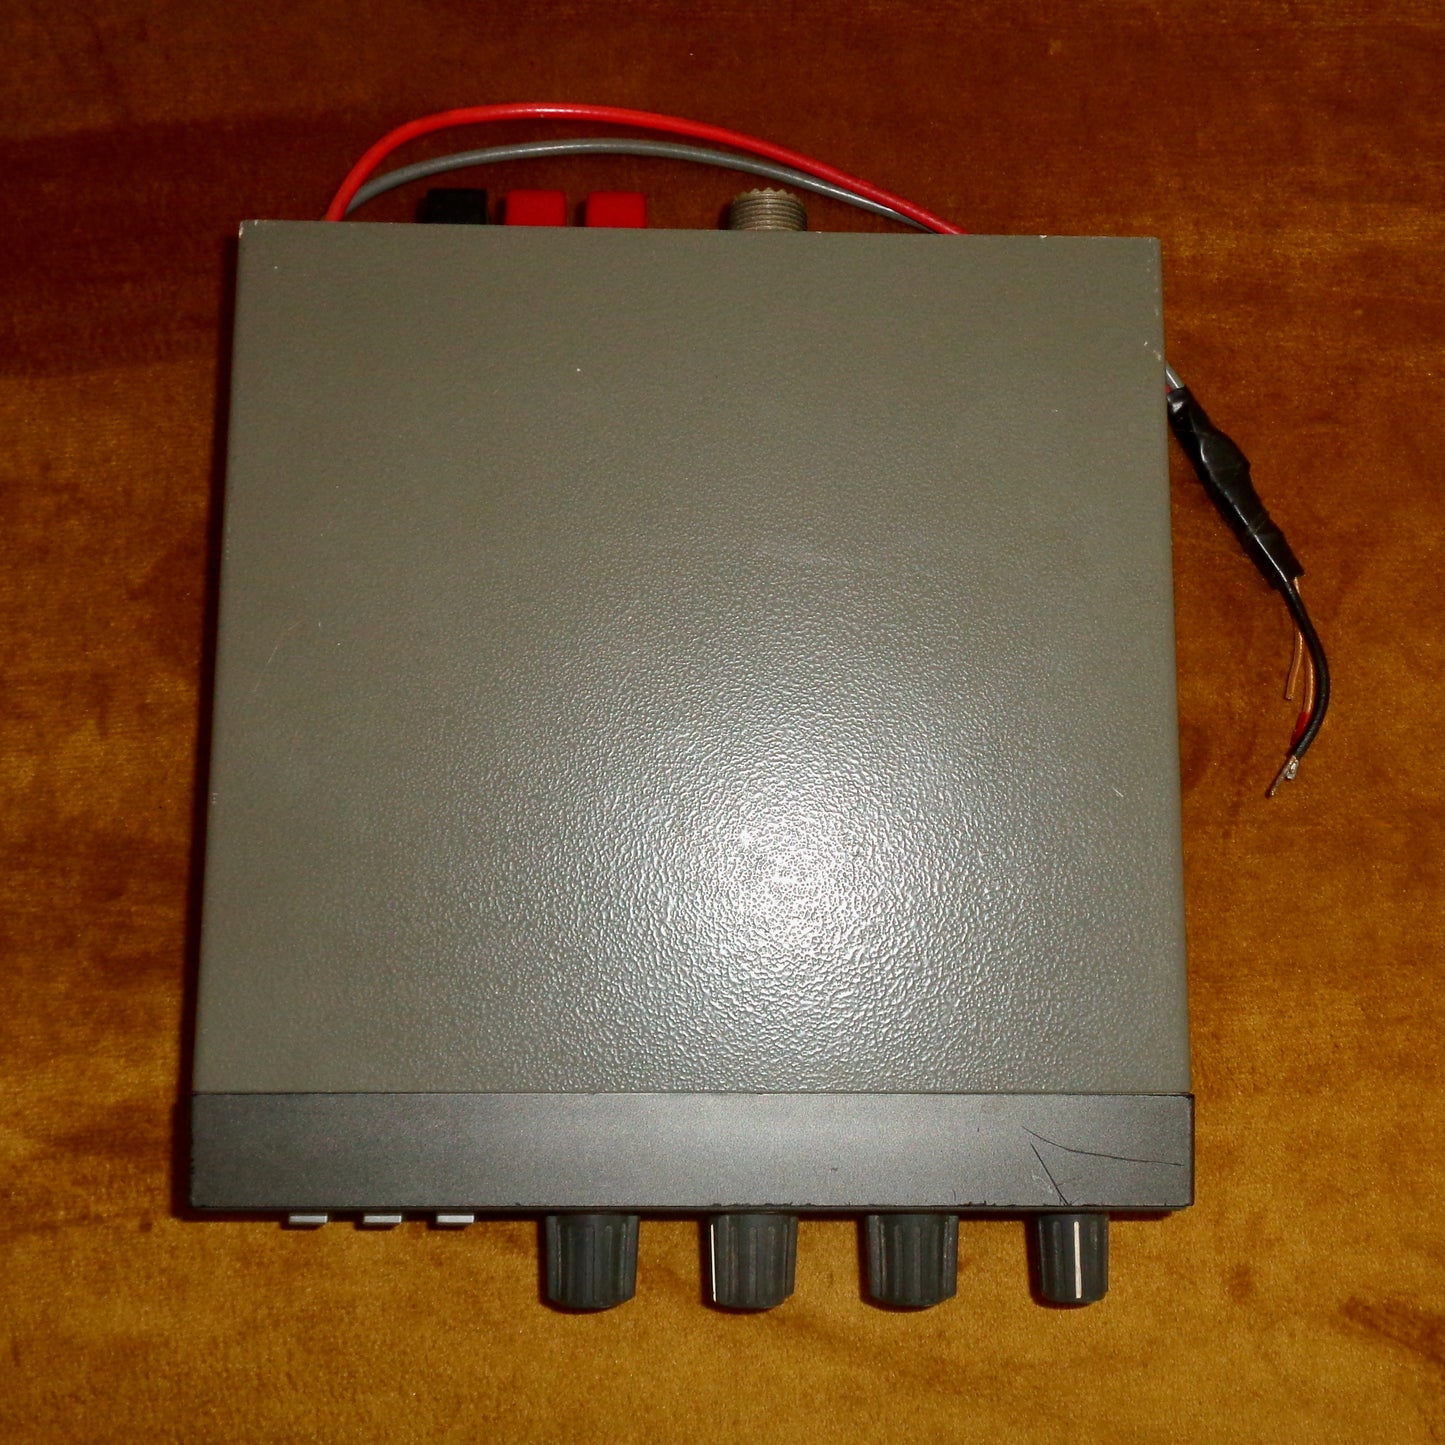 1980s Yaesu FRT-7700 Antenna Tuner ATU